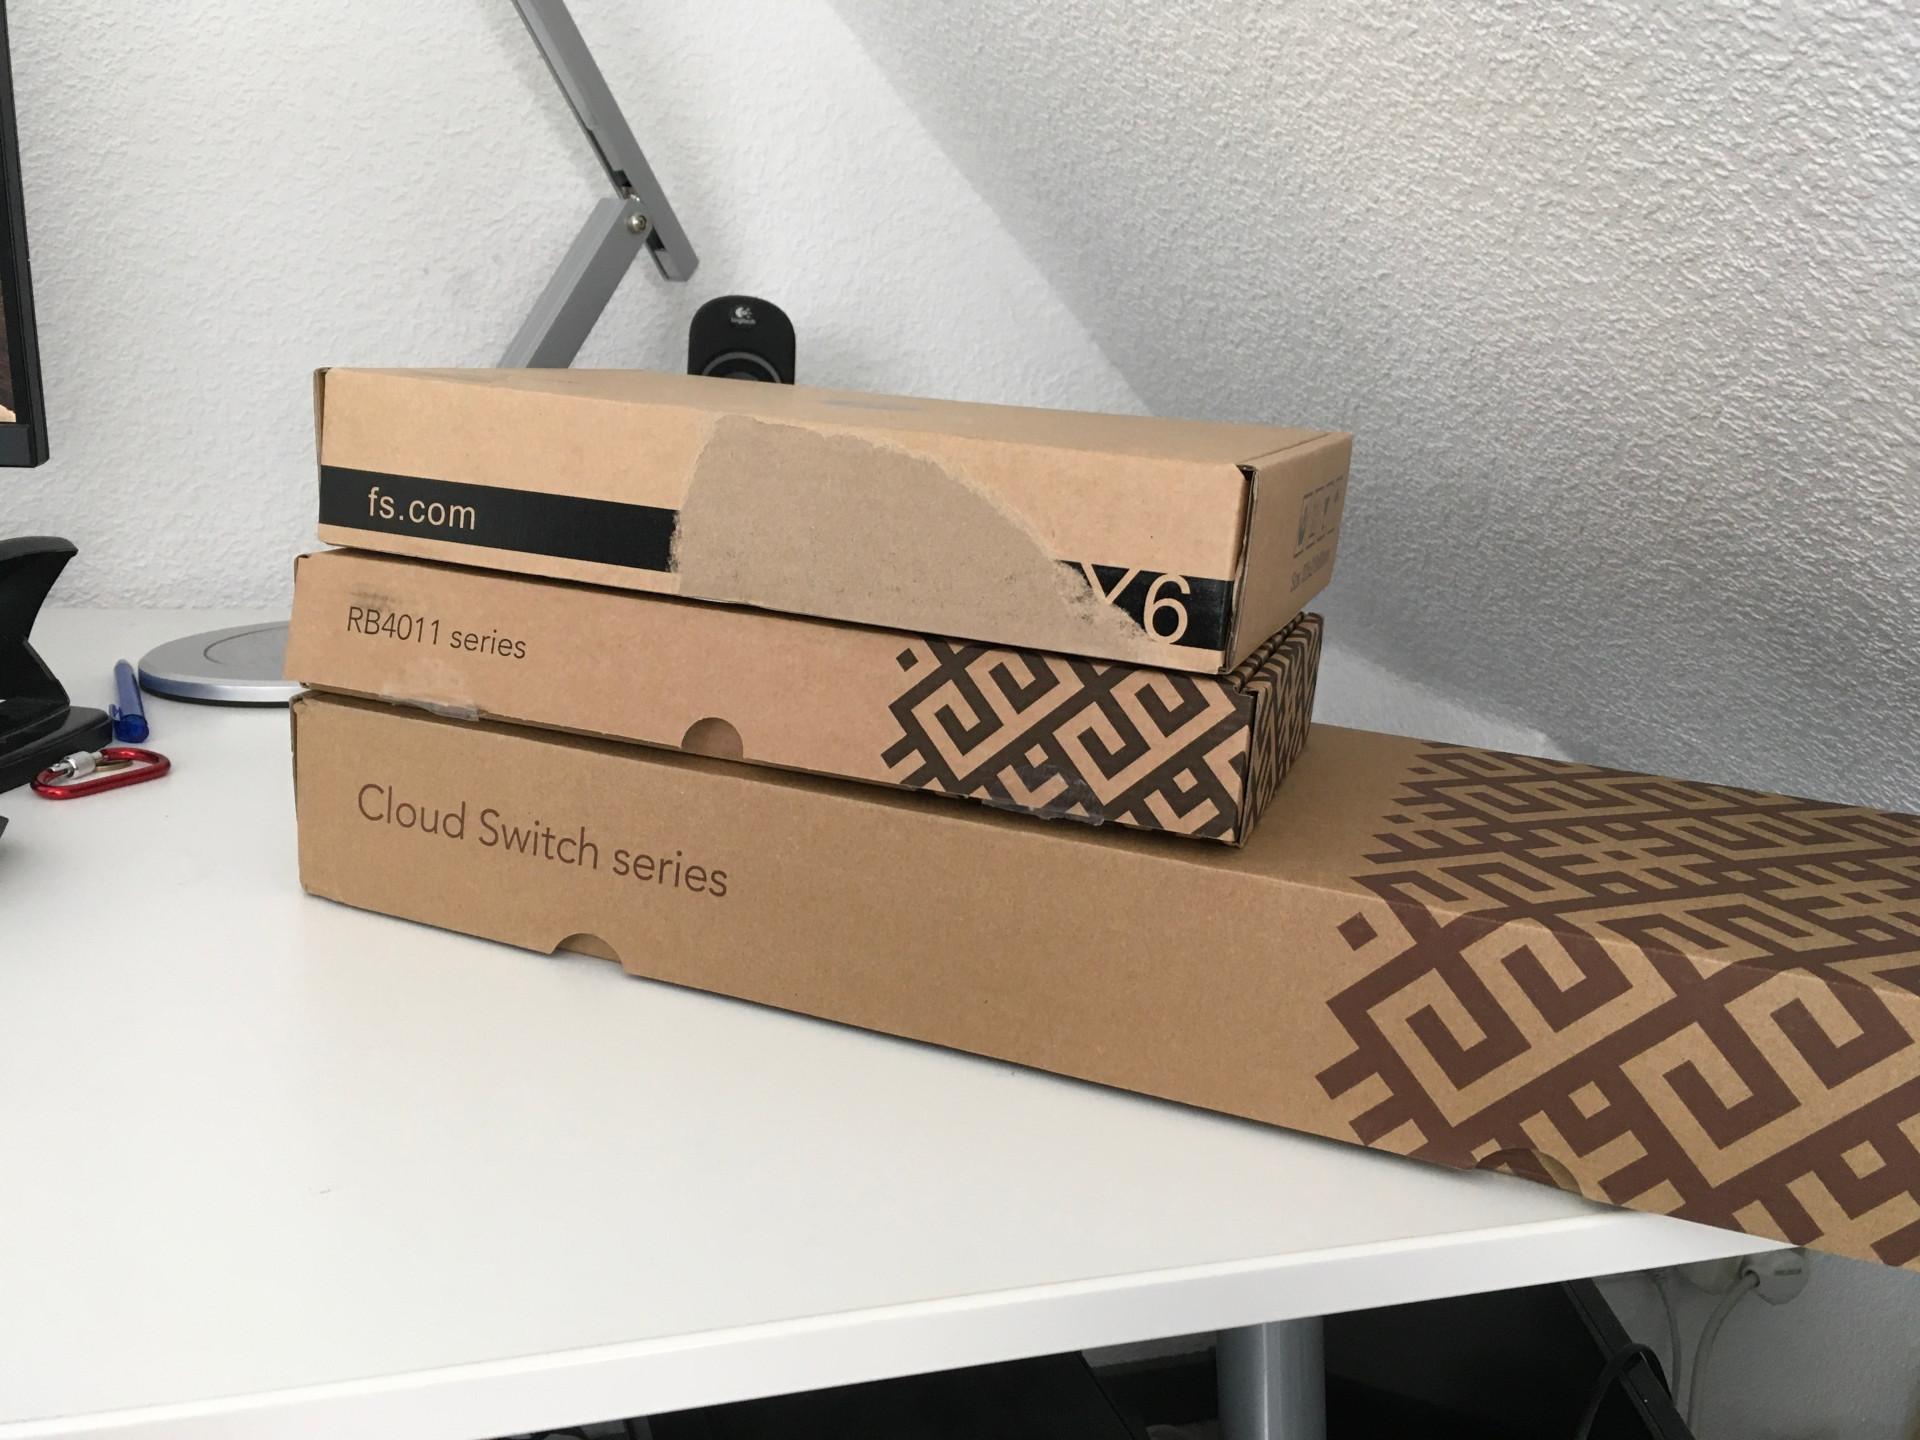 MikroTik boxes